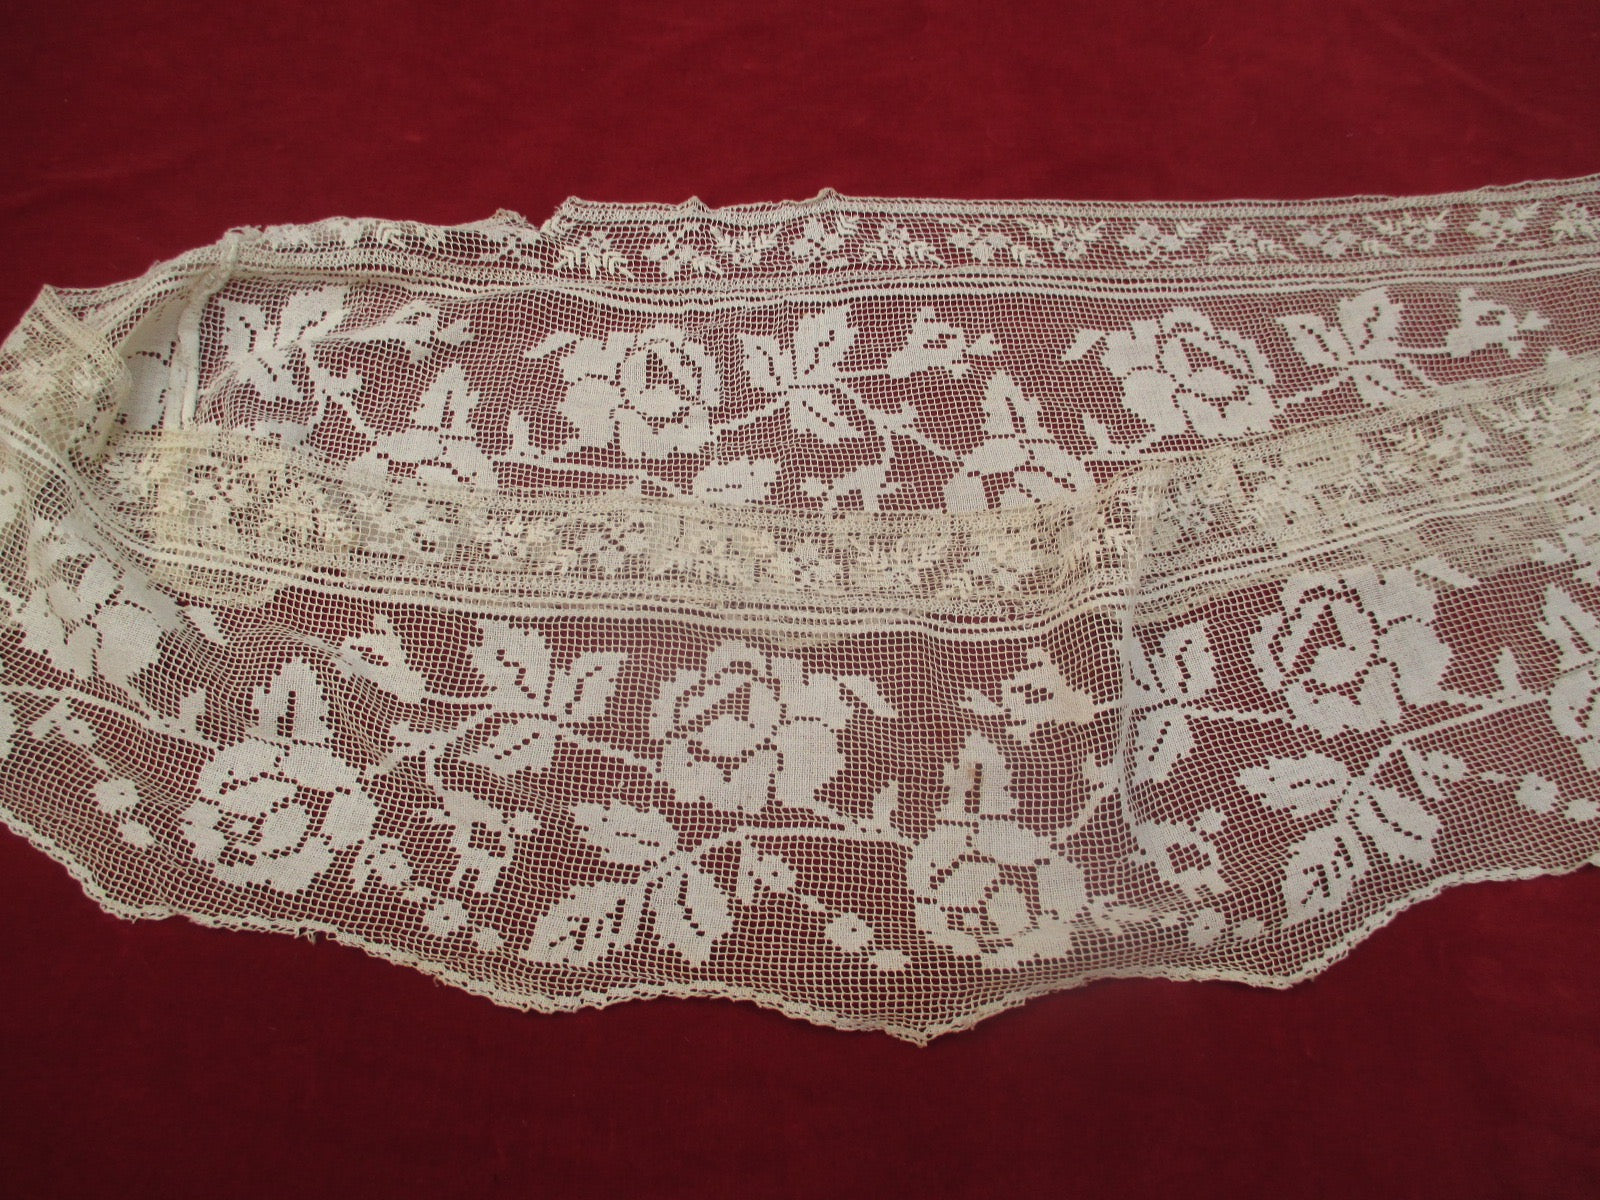 Antique Victorian Lace Petticoat Flounce